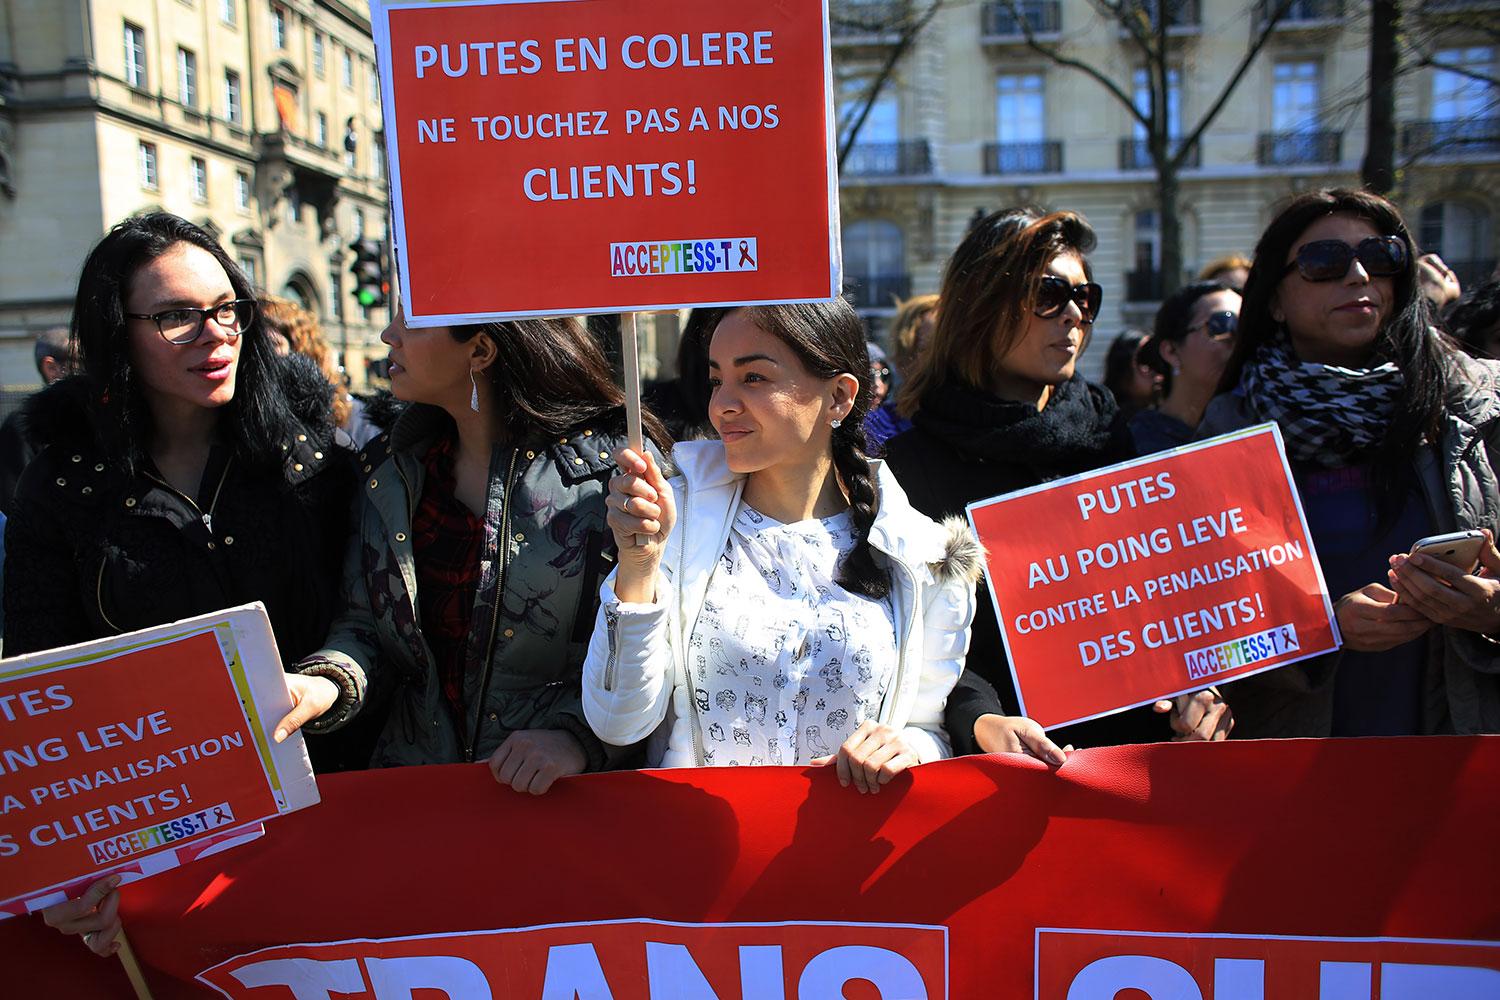 Franska prostituerade protesterar mot lagen med skyltar där det står: ”Rör inte våra kunder”.